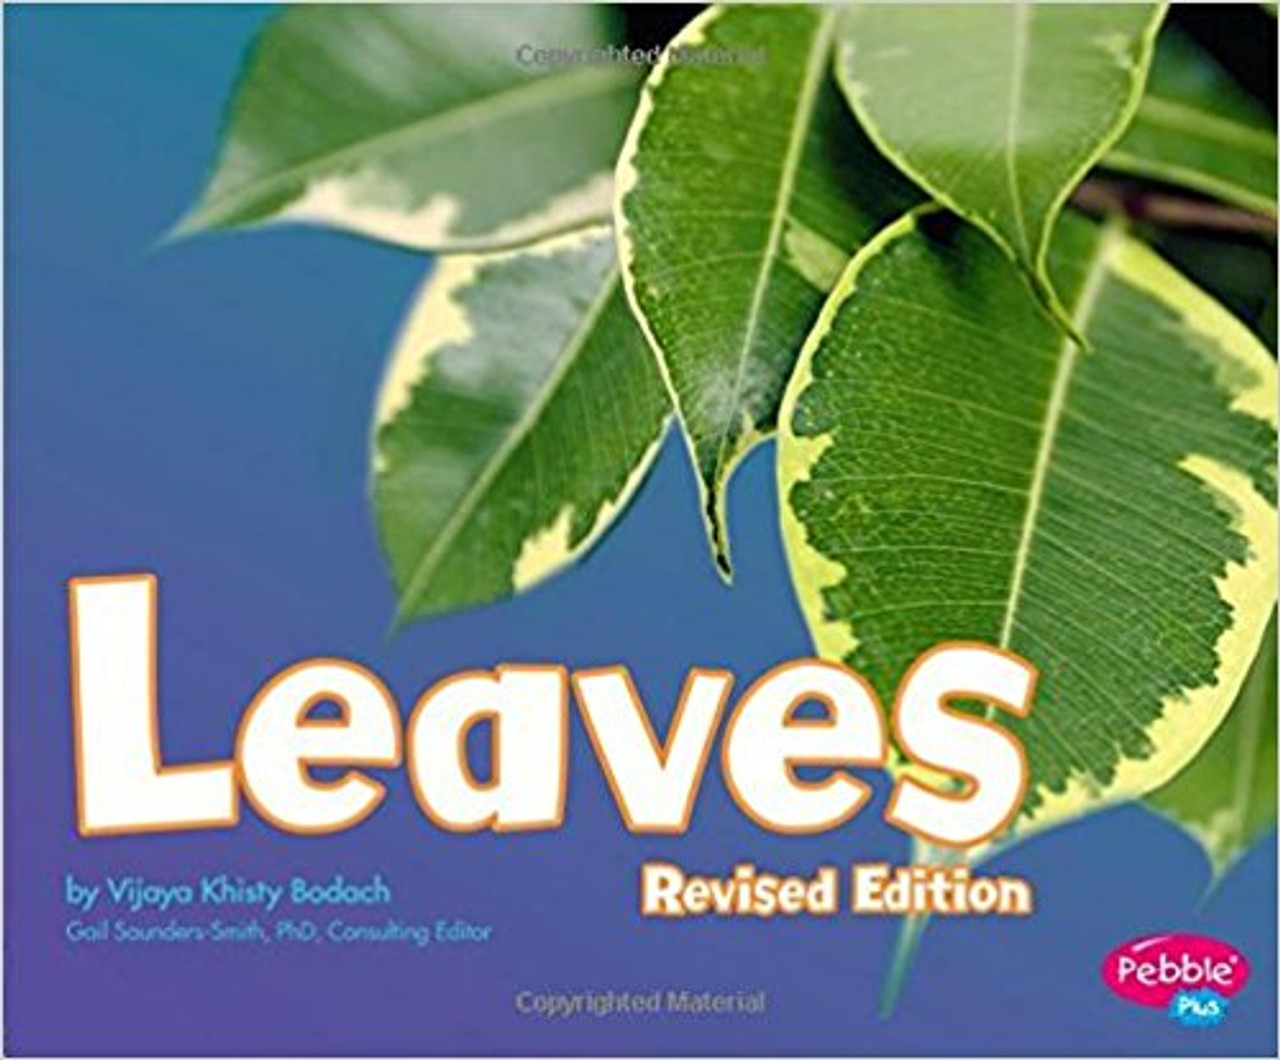 Leaves (Plant Parts) by Vijaya Khisty Bodach